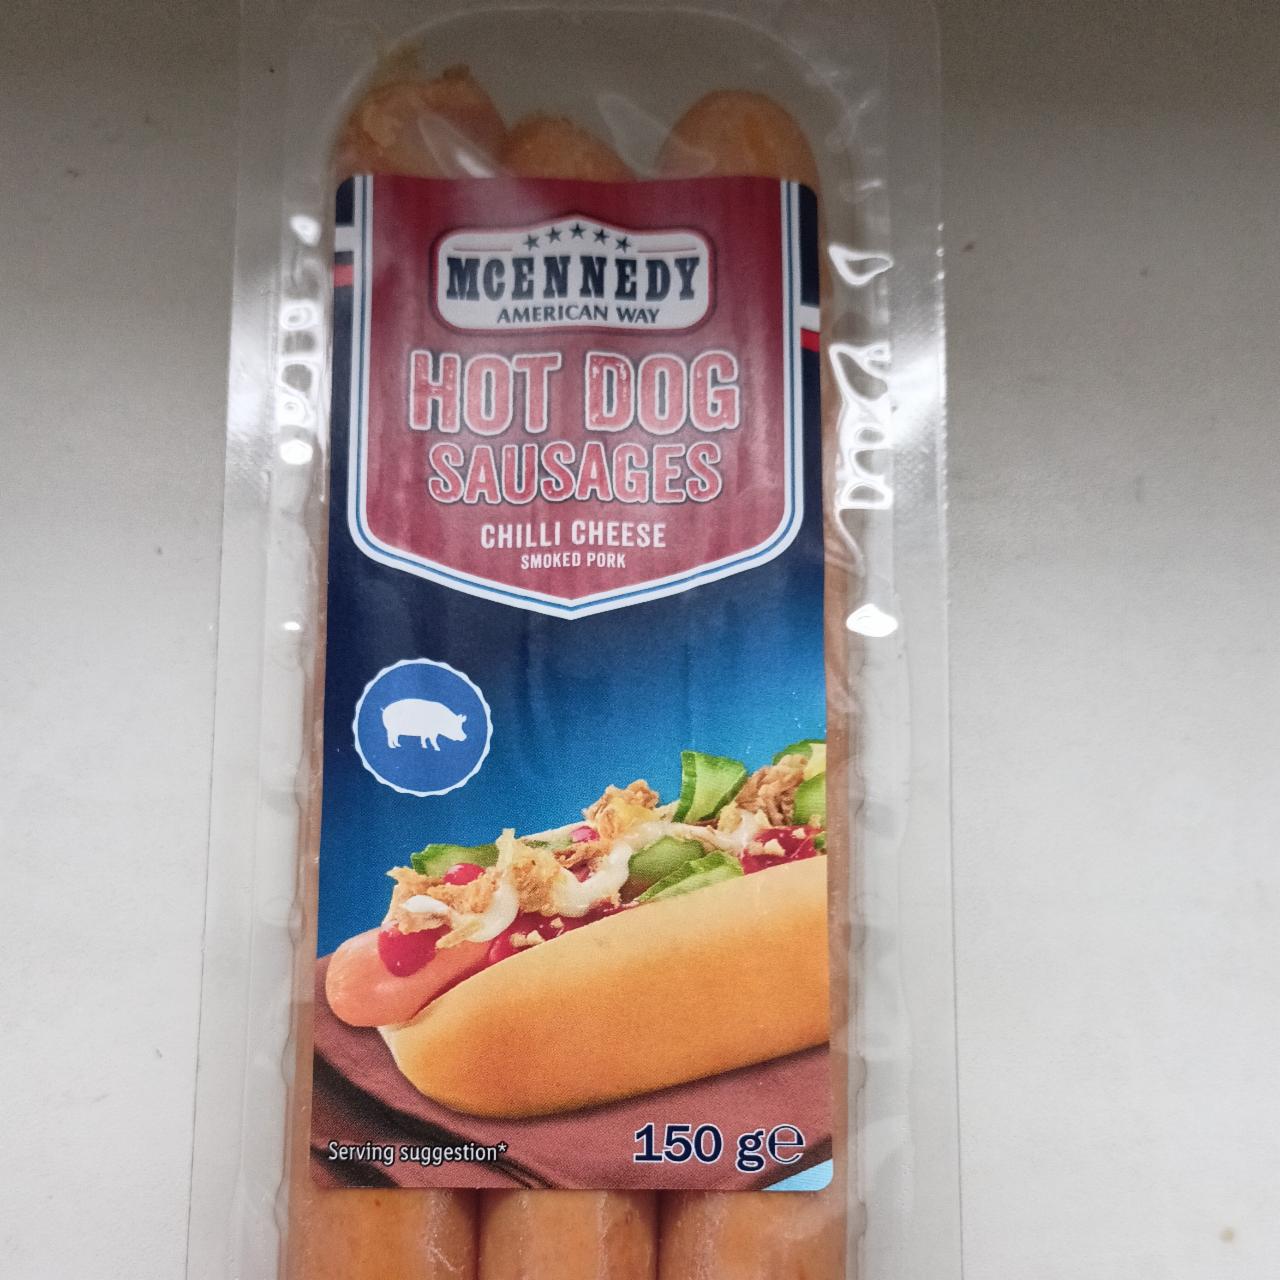 Hot dog Suasages Chilli nutriční - a McEnnedy kalorie, cheese kJ American Way hodnoty